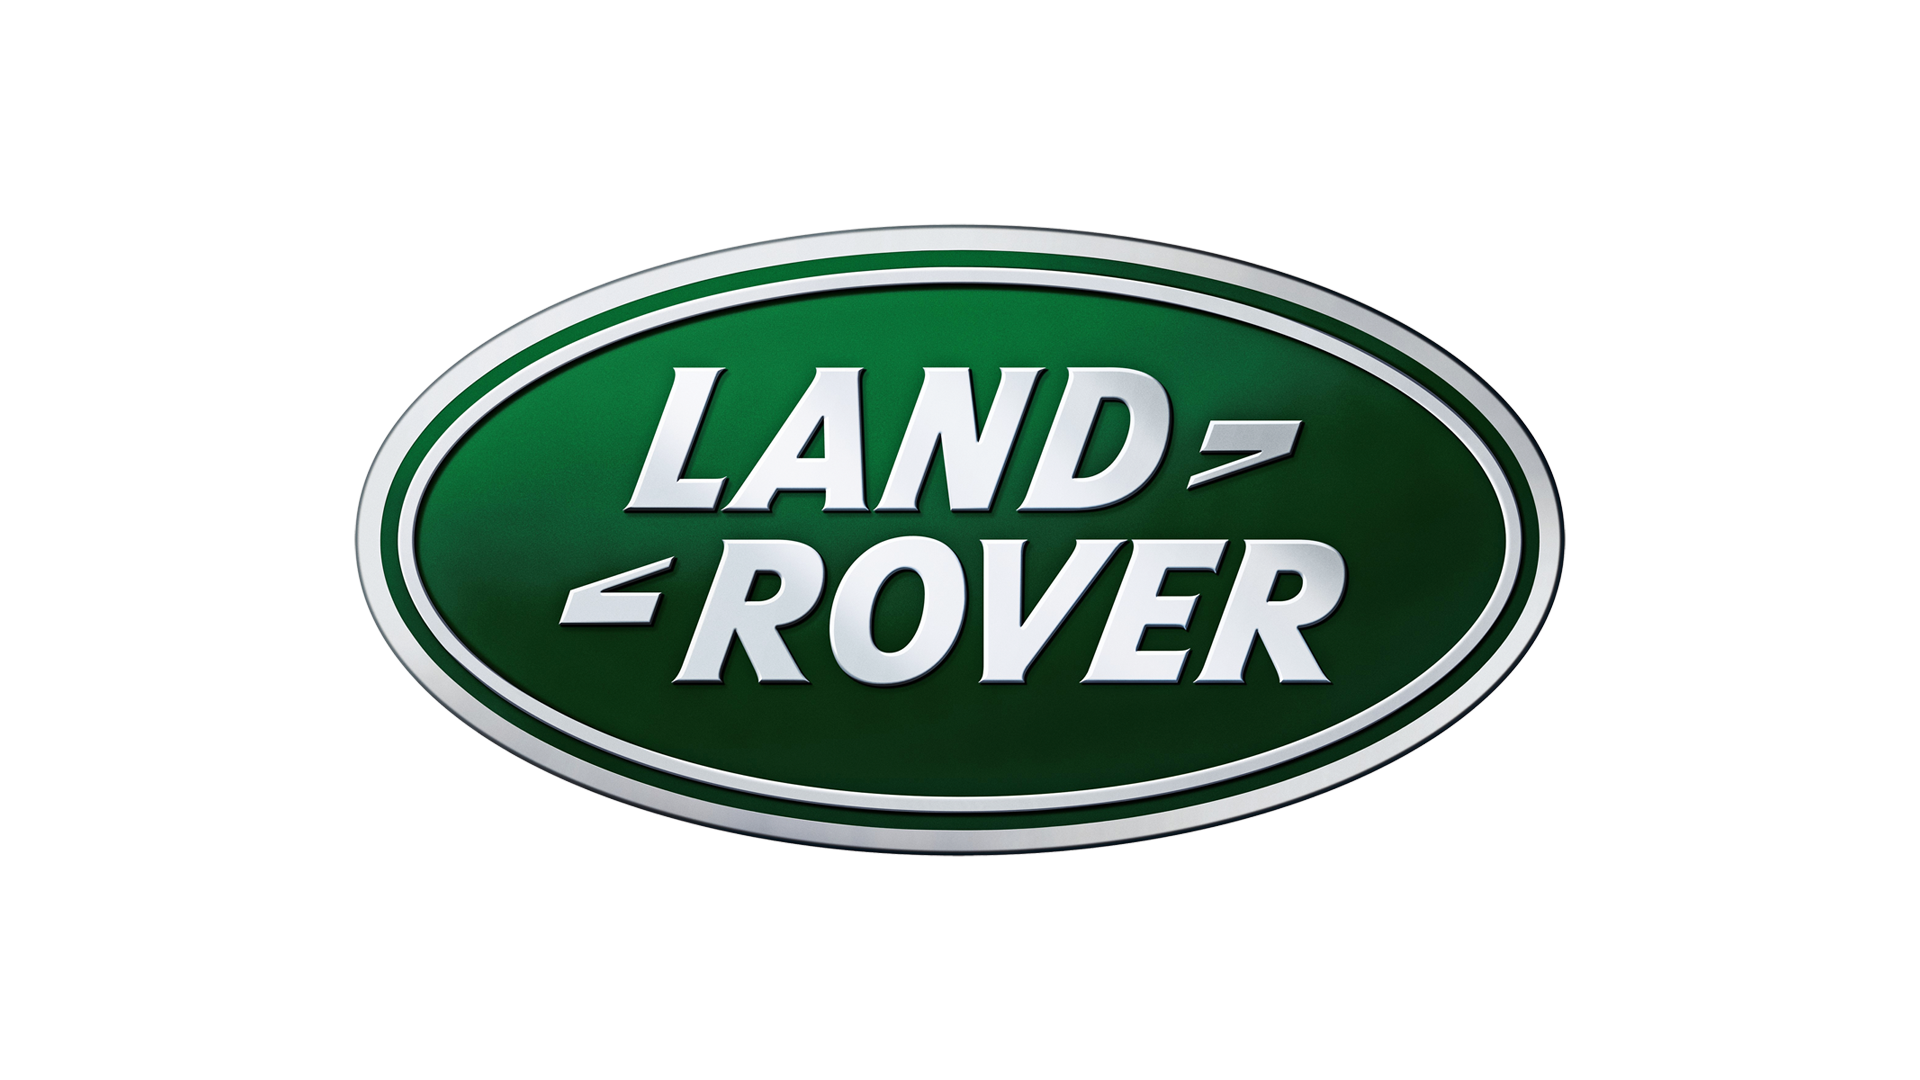 Land-Rover